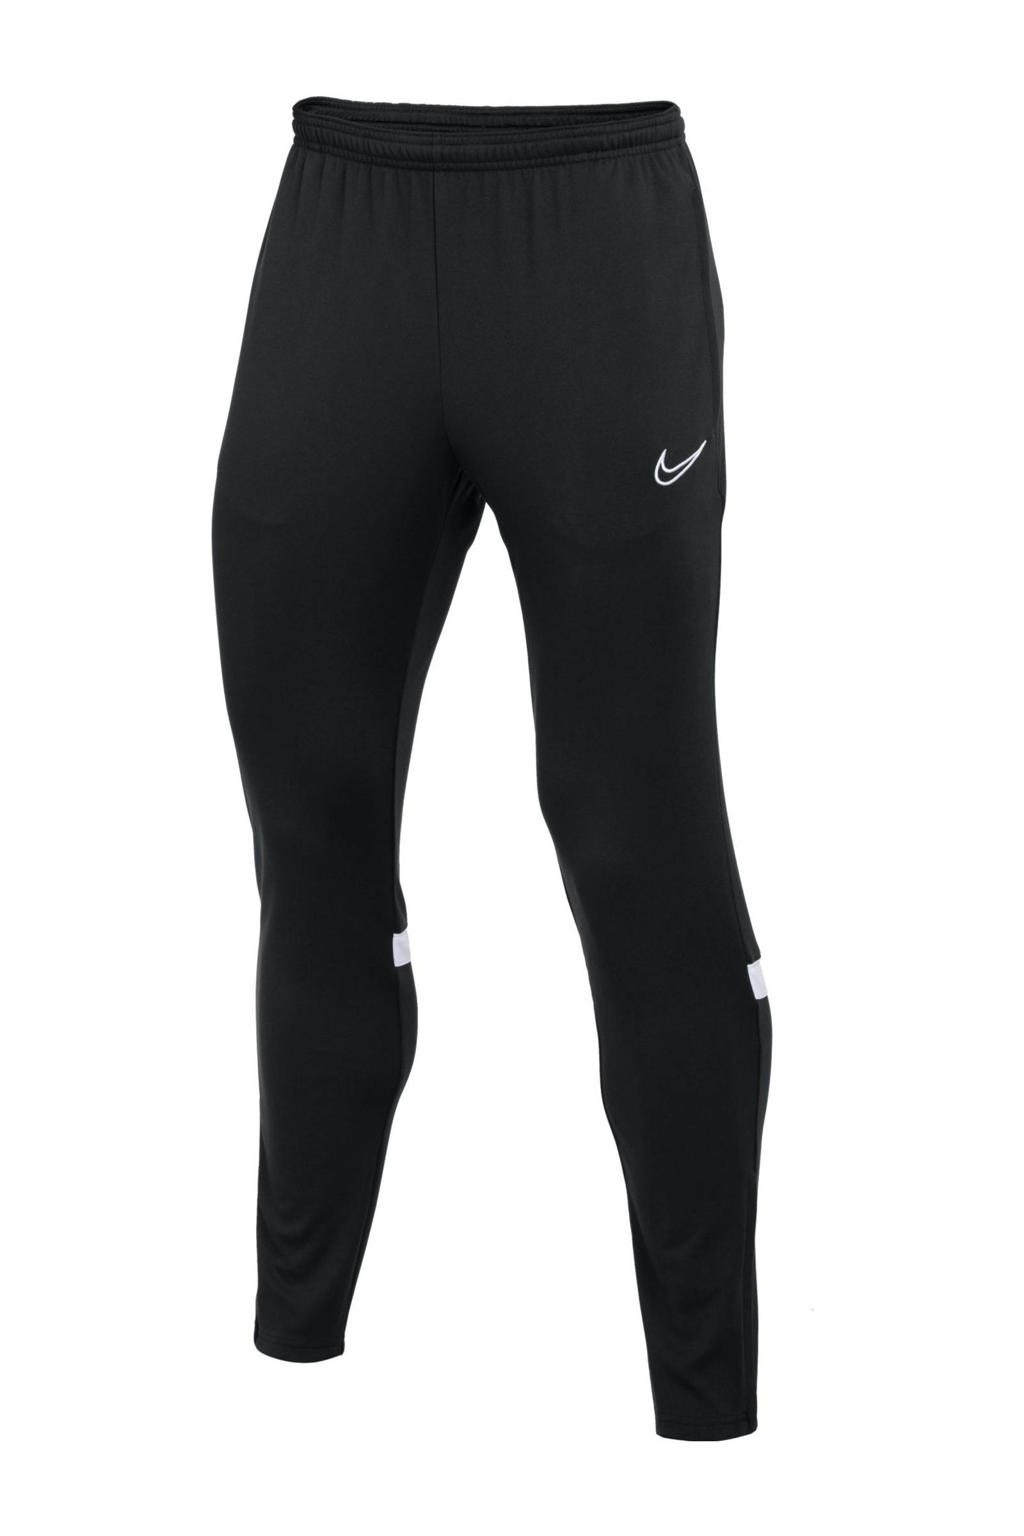 Zwart en witte jongens en meisjes Nike Junior trainingsbroek van polyester met regular fit, regular waist en logo dessin